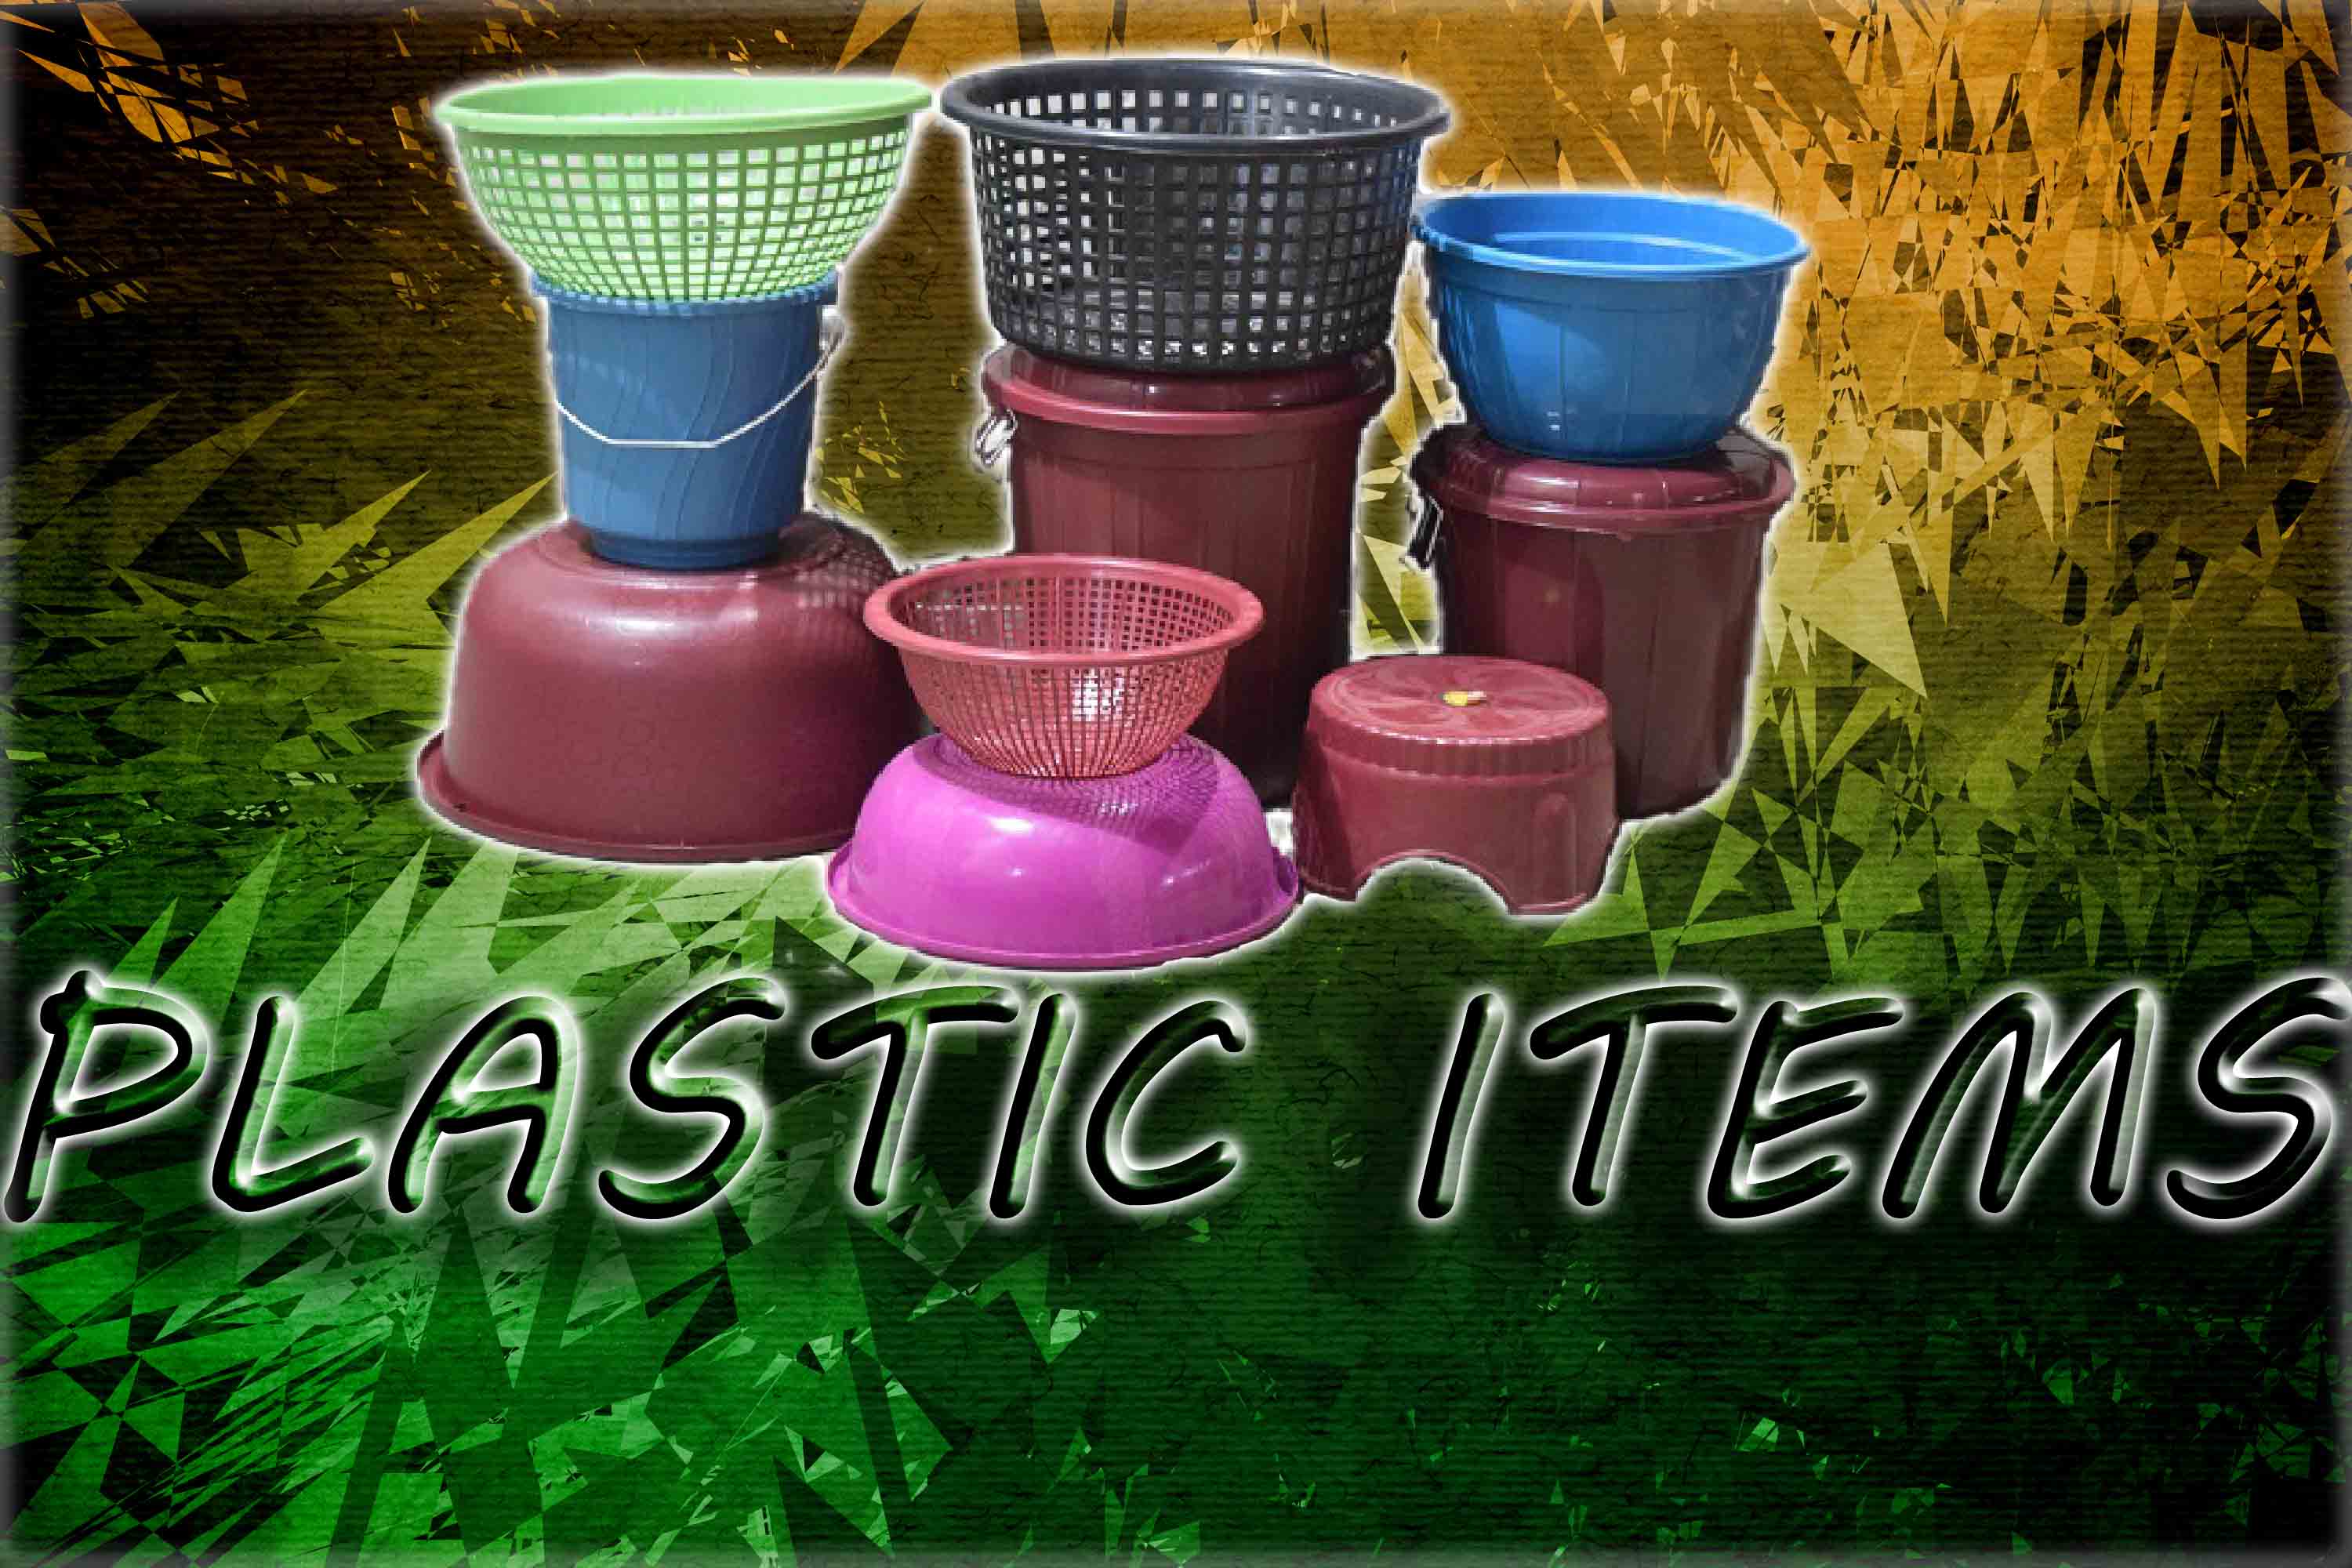 Plastic items